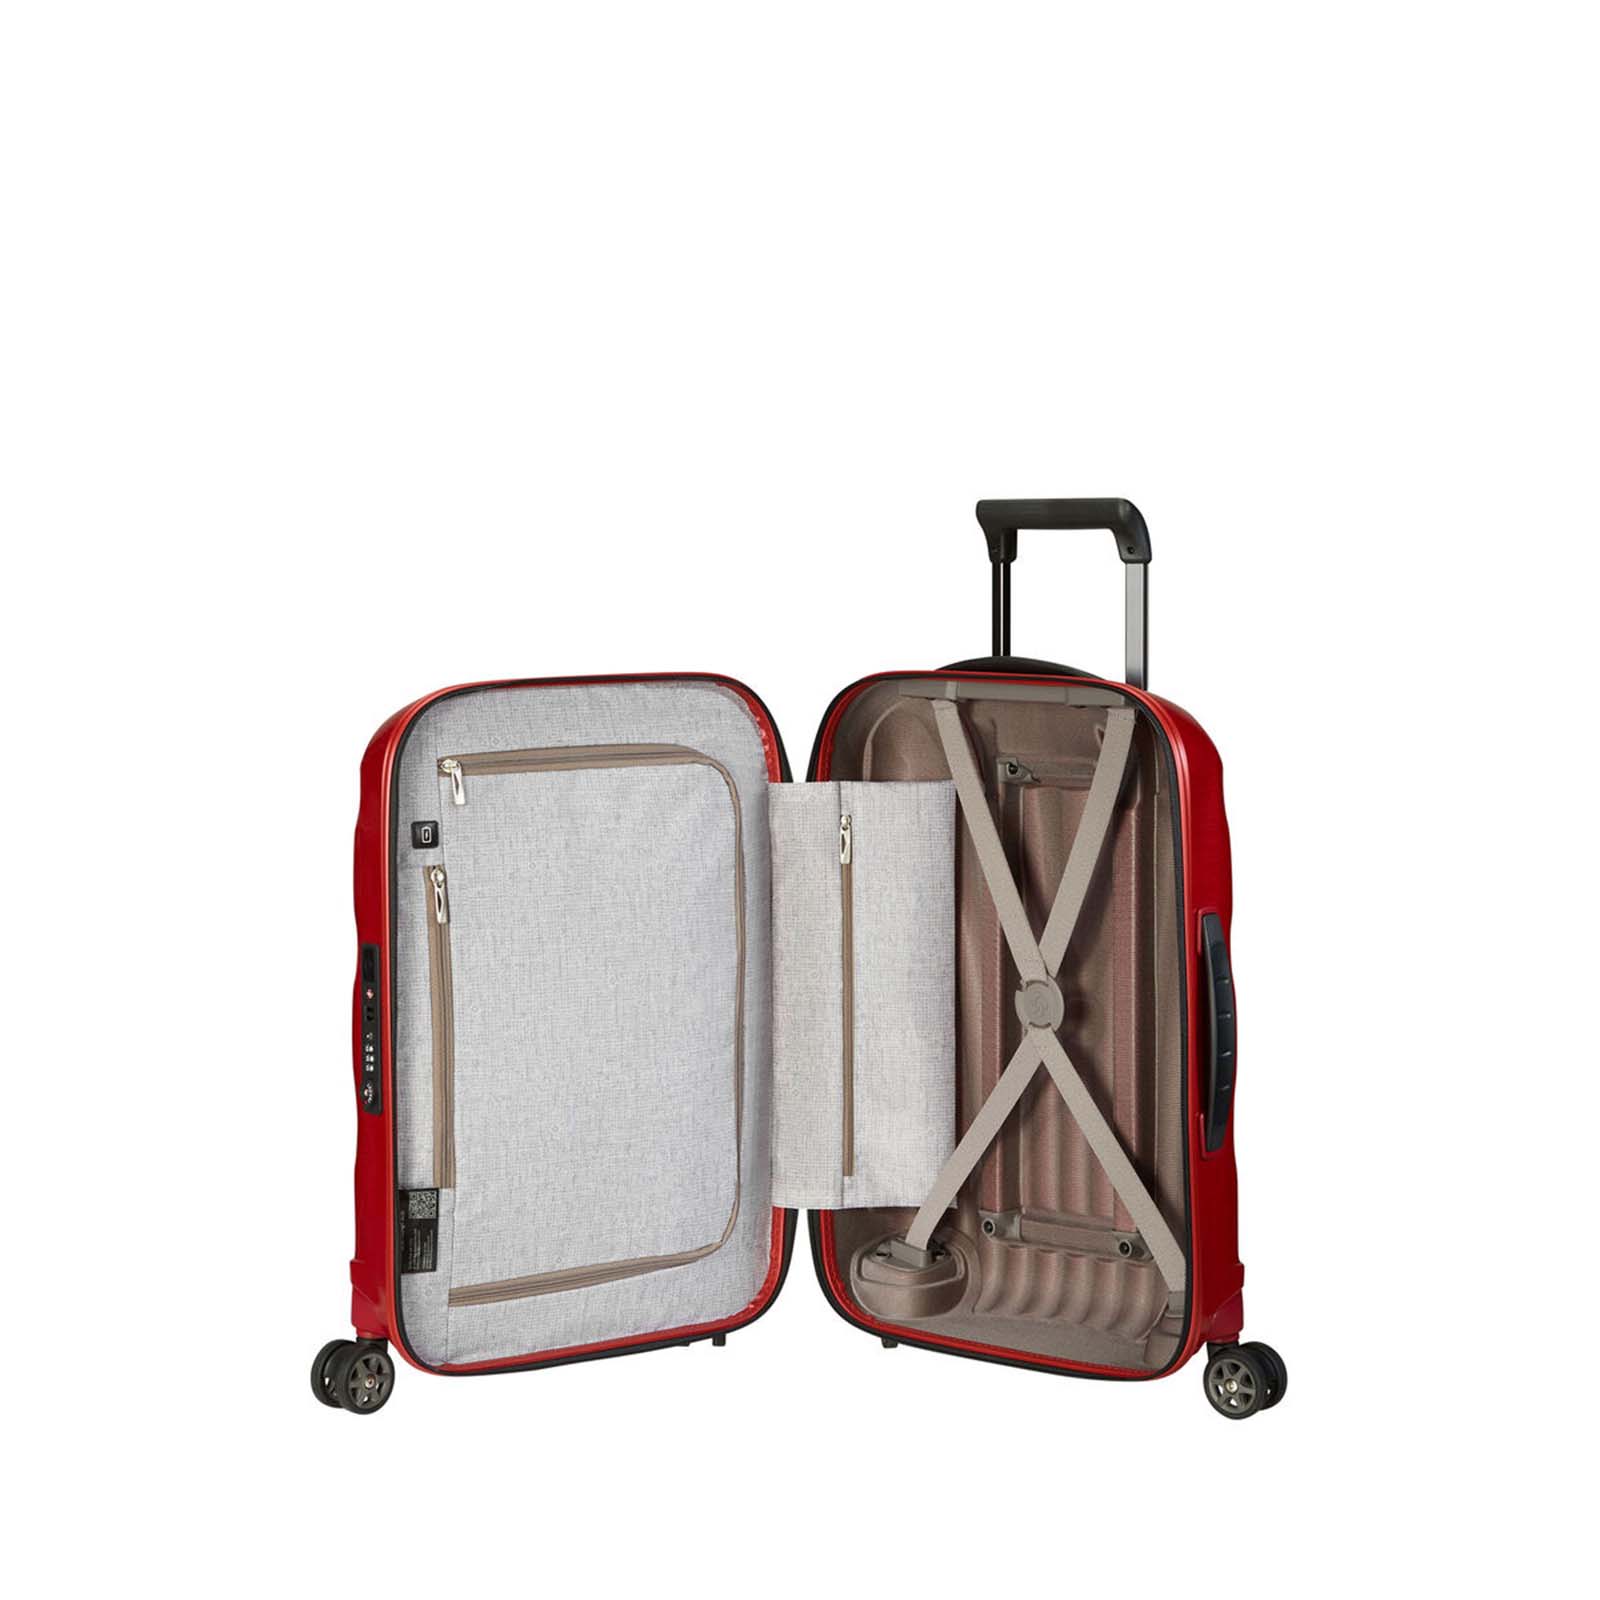 Samsonite-C-Lite-55cm-Suitcase-Chili-Red-Open